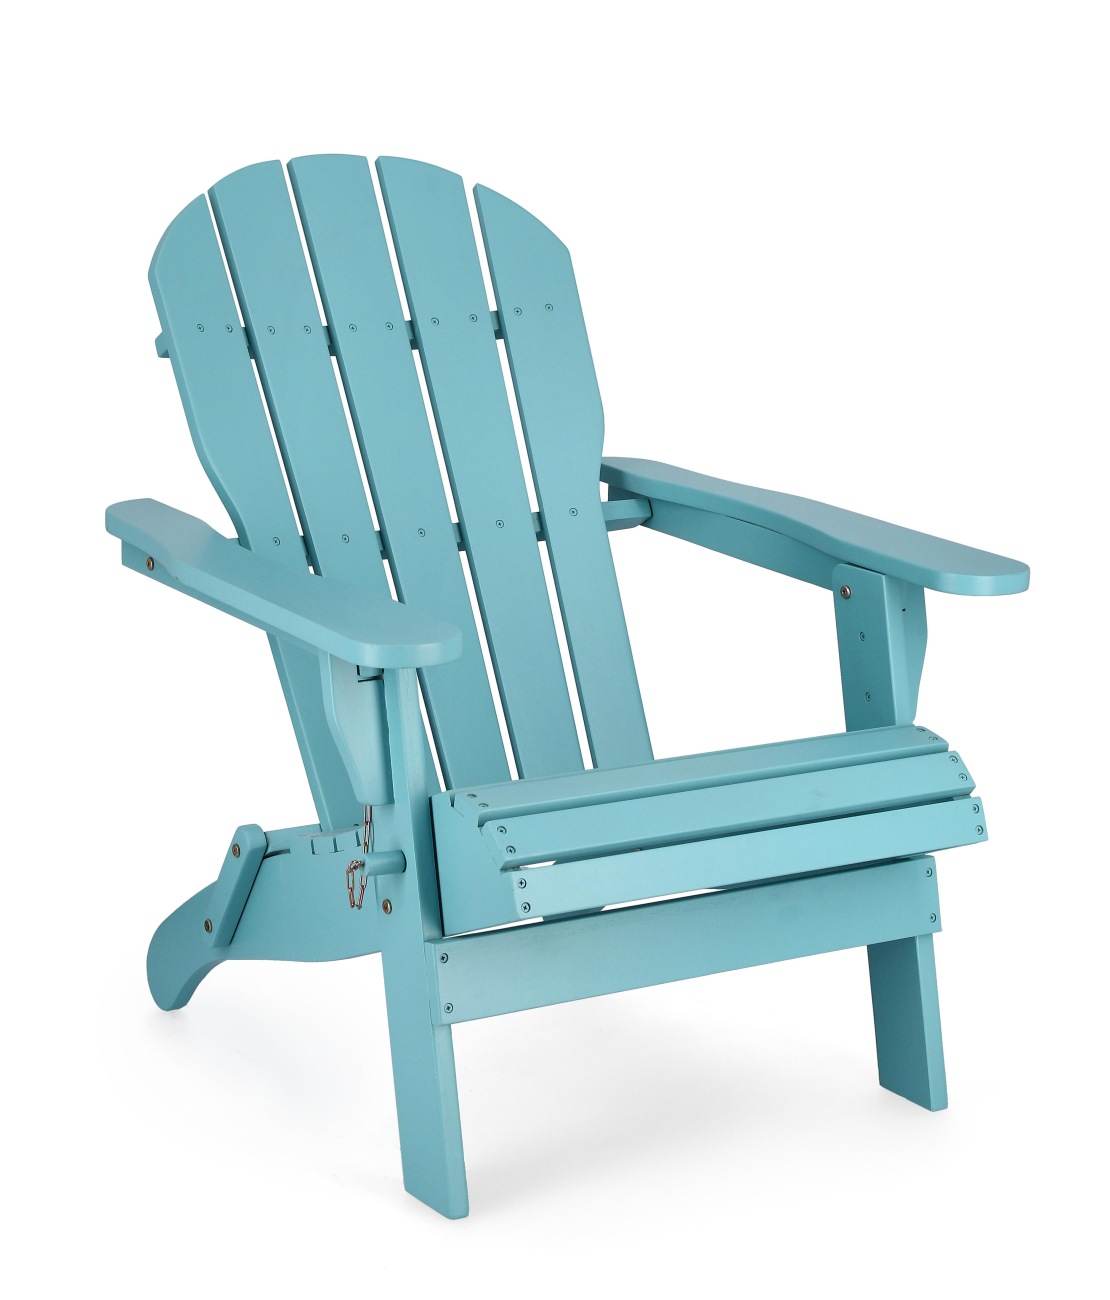 Der Gartensessel Filadelfia überzeugt mit seinem modernen Design. Gefertigt wurde er aus Akzienholz, welches einen hellblau Farbton besitzt. Das Gestell ist auch aus Akazienholz. Der Gartensessel besitzt eine Sitzhöhe von 37 cm und ist klappbar.